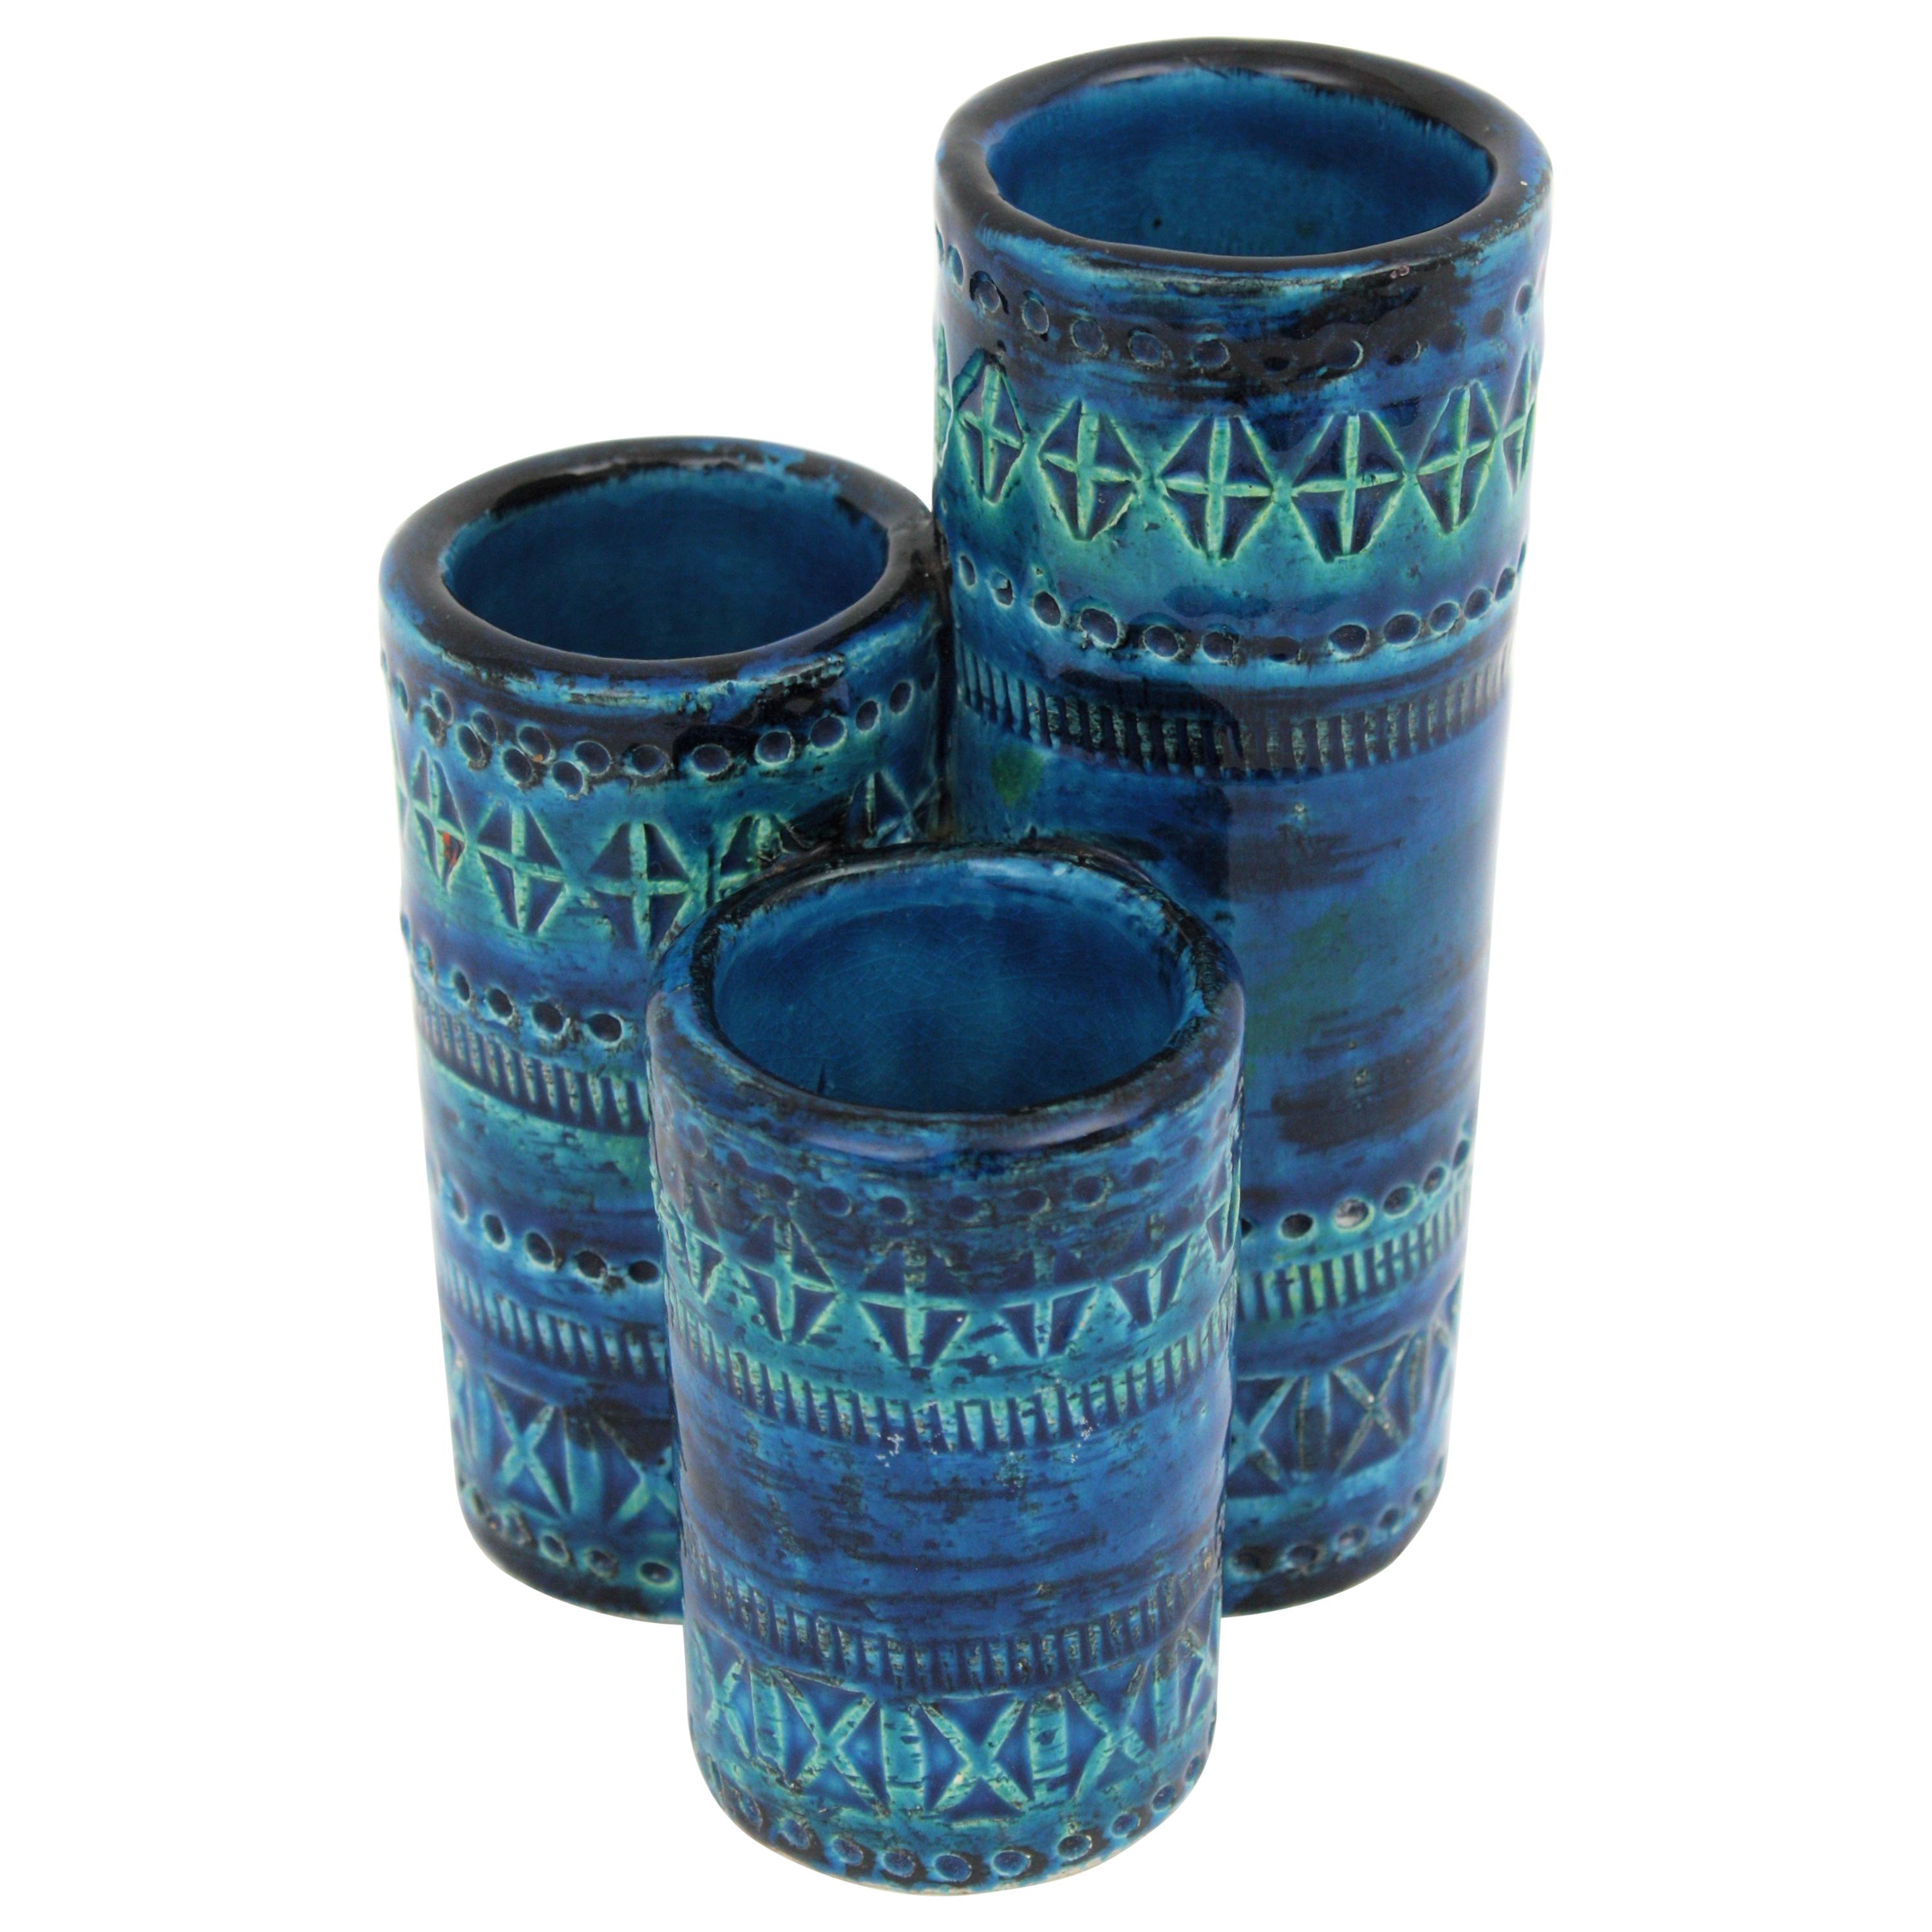 Aldo Londi Bitossi Rimini Blue Glazed Ceramic Triple Vase, Italy, 1960s